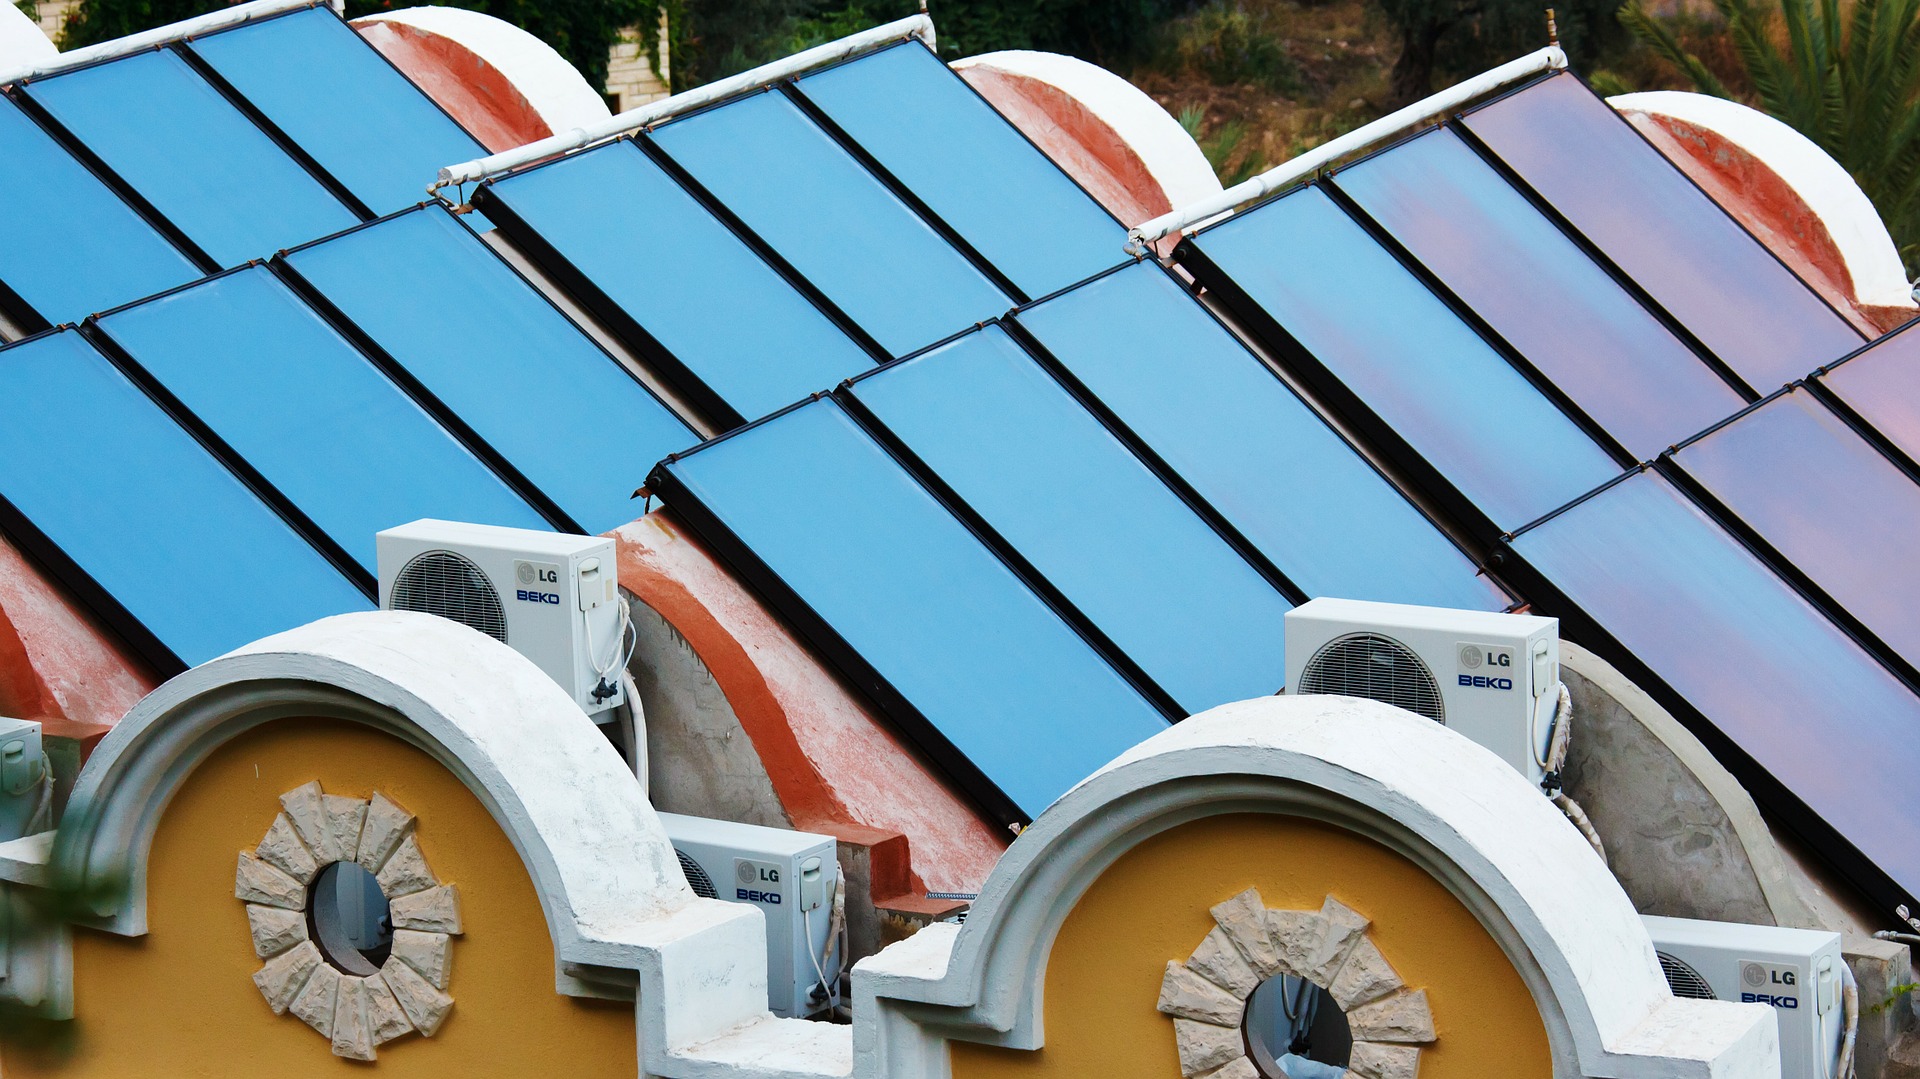 Entwurf unter Verschluss: Kommt bald eine Solarpflicht für Neubauten?